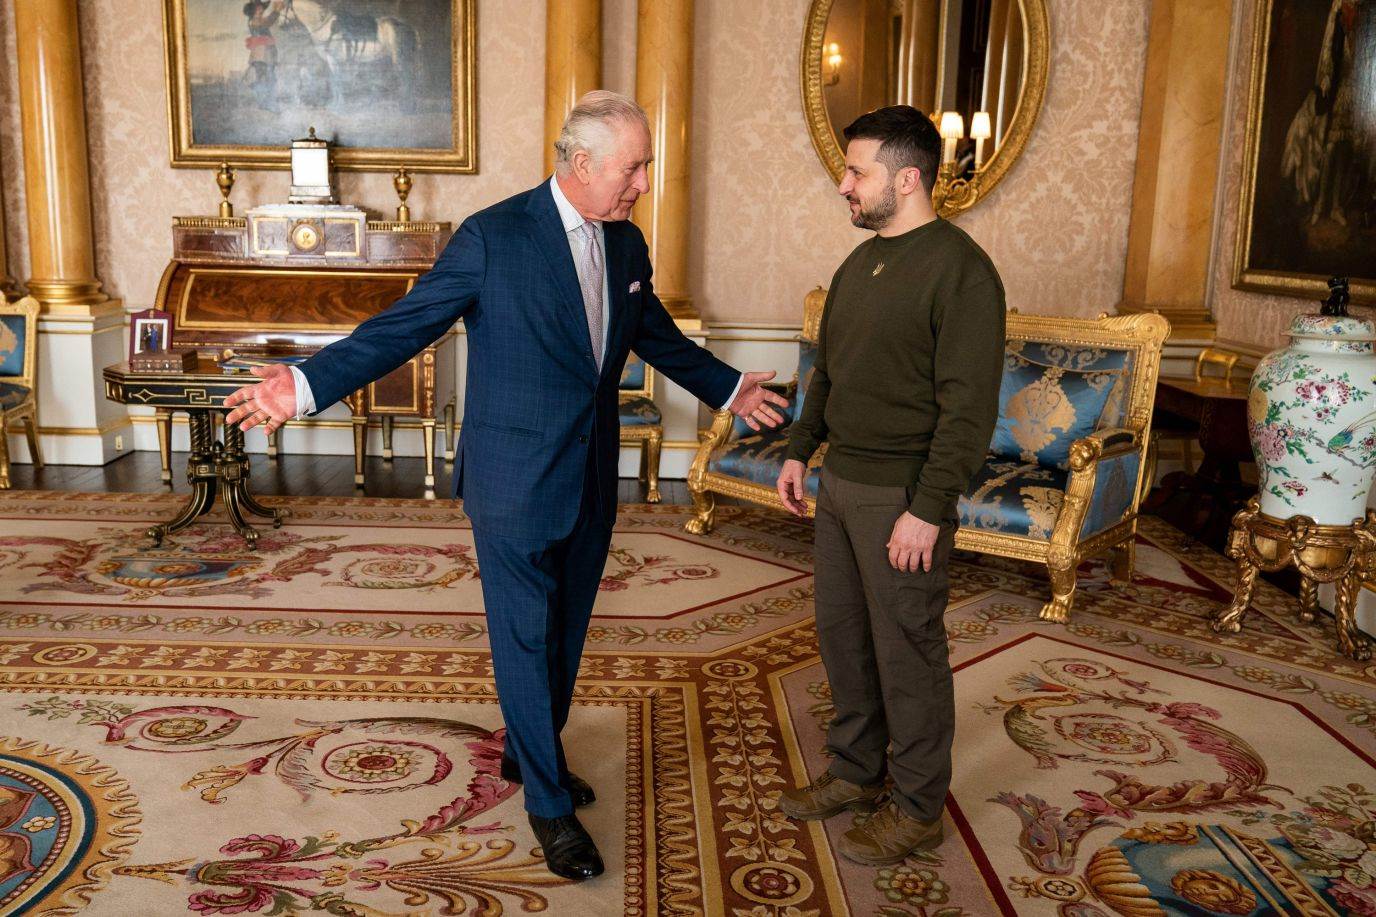 ملك بريطانيا تشارلز الثالث، إلى اليسار، يرحب بالرئيس الأوكراني فولوديمير زيلينسكي في قصر باكنغهام بلندن يوم الأربعاء ، 8 فبراير. 